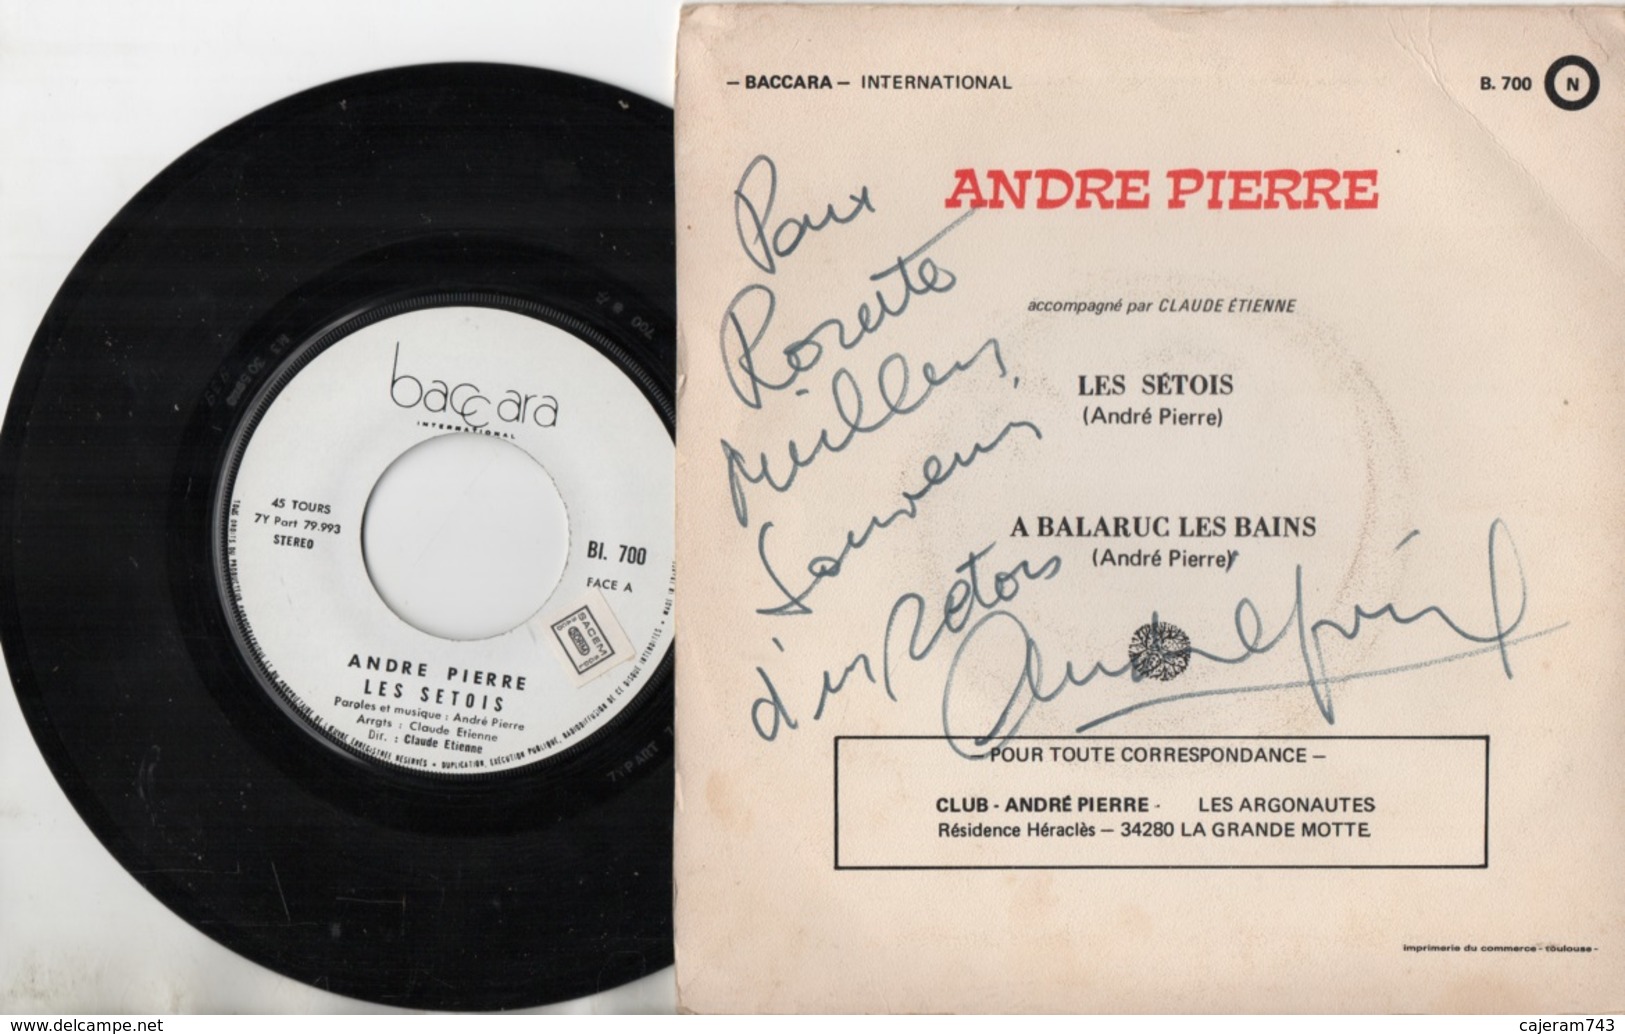 45T. ANDRE PIERRE. A BALARUC LES BAINS - LES SETOIS (Sete). DEDICACE Au Dos De La Pochette, Signé Autographe - Other - French Music